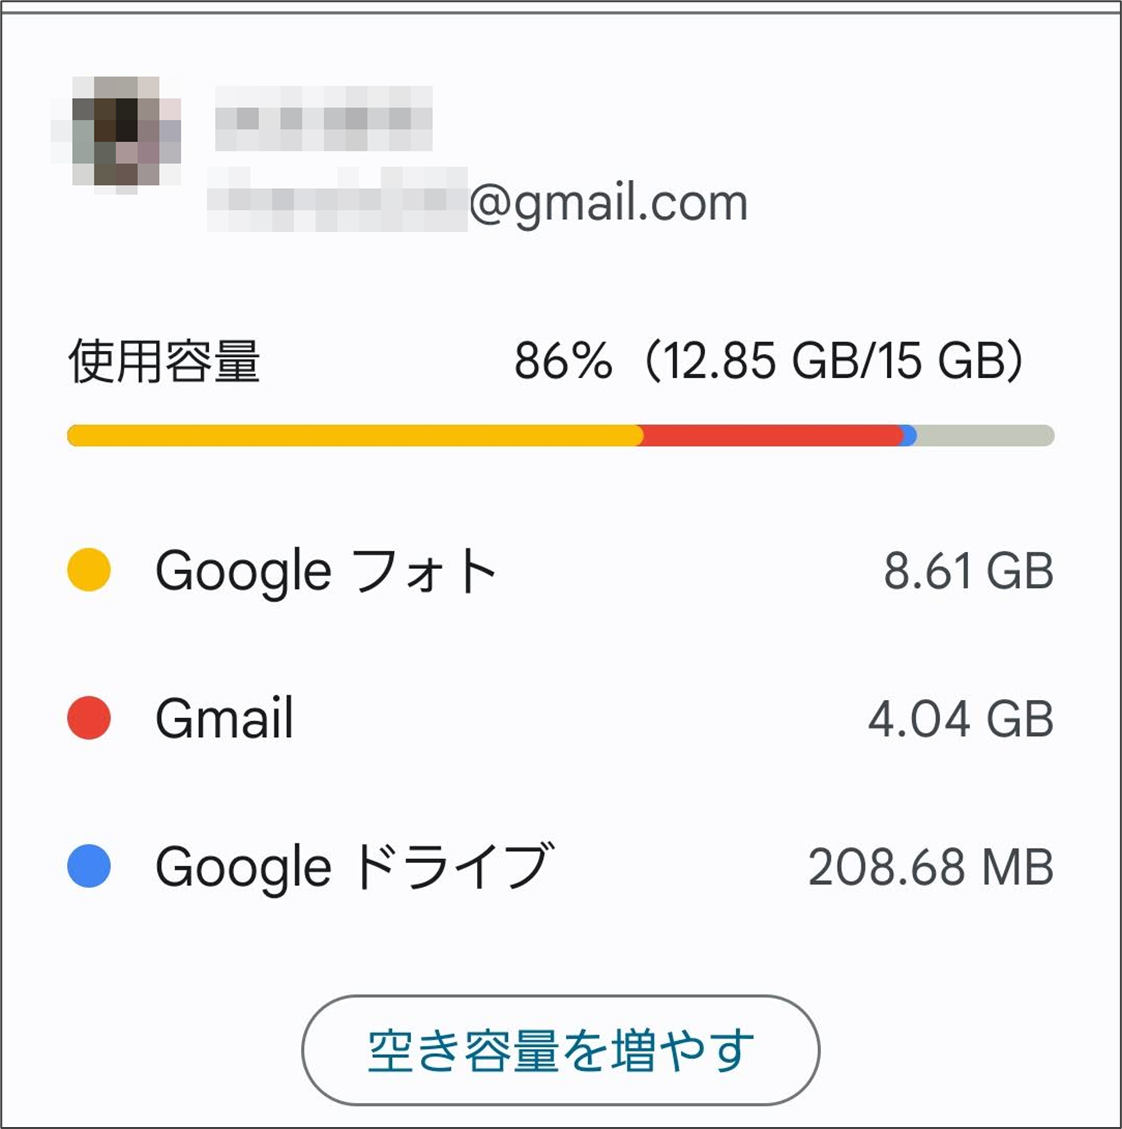 Googleアカウントの使用容量
Googleフォト、Gmail、Googleドライブのそれぞれの使用量と、合計の数値が表示されている